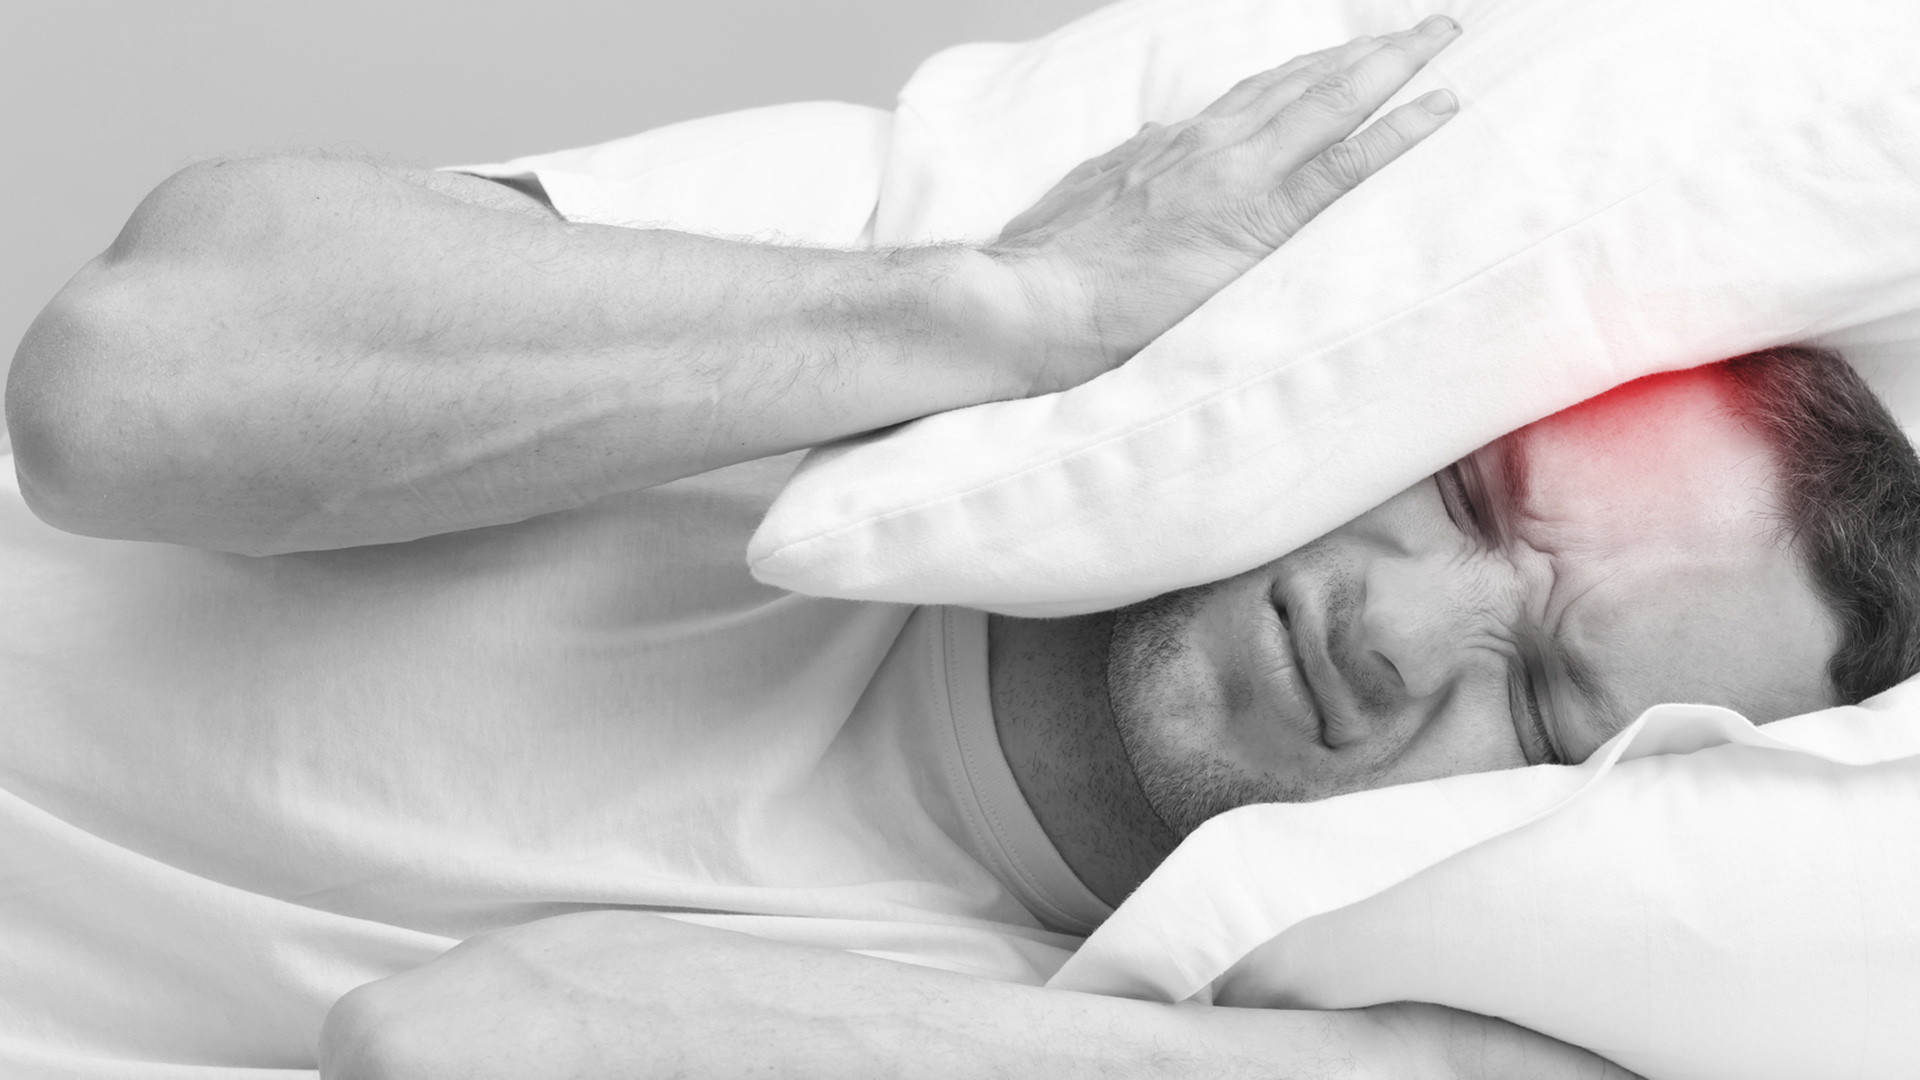 Si los dolores de cabeza empeoran por la mañana o despiertan del sueño pueden ser una señal de los tumores cerebrales. Requieren consulta médica/Archivo